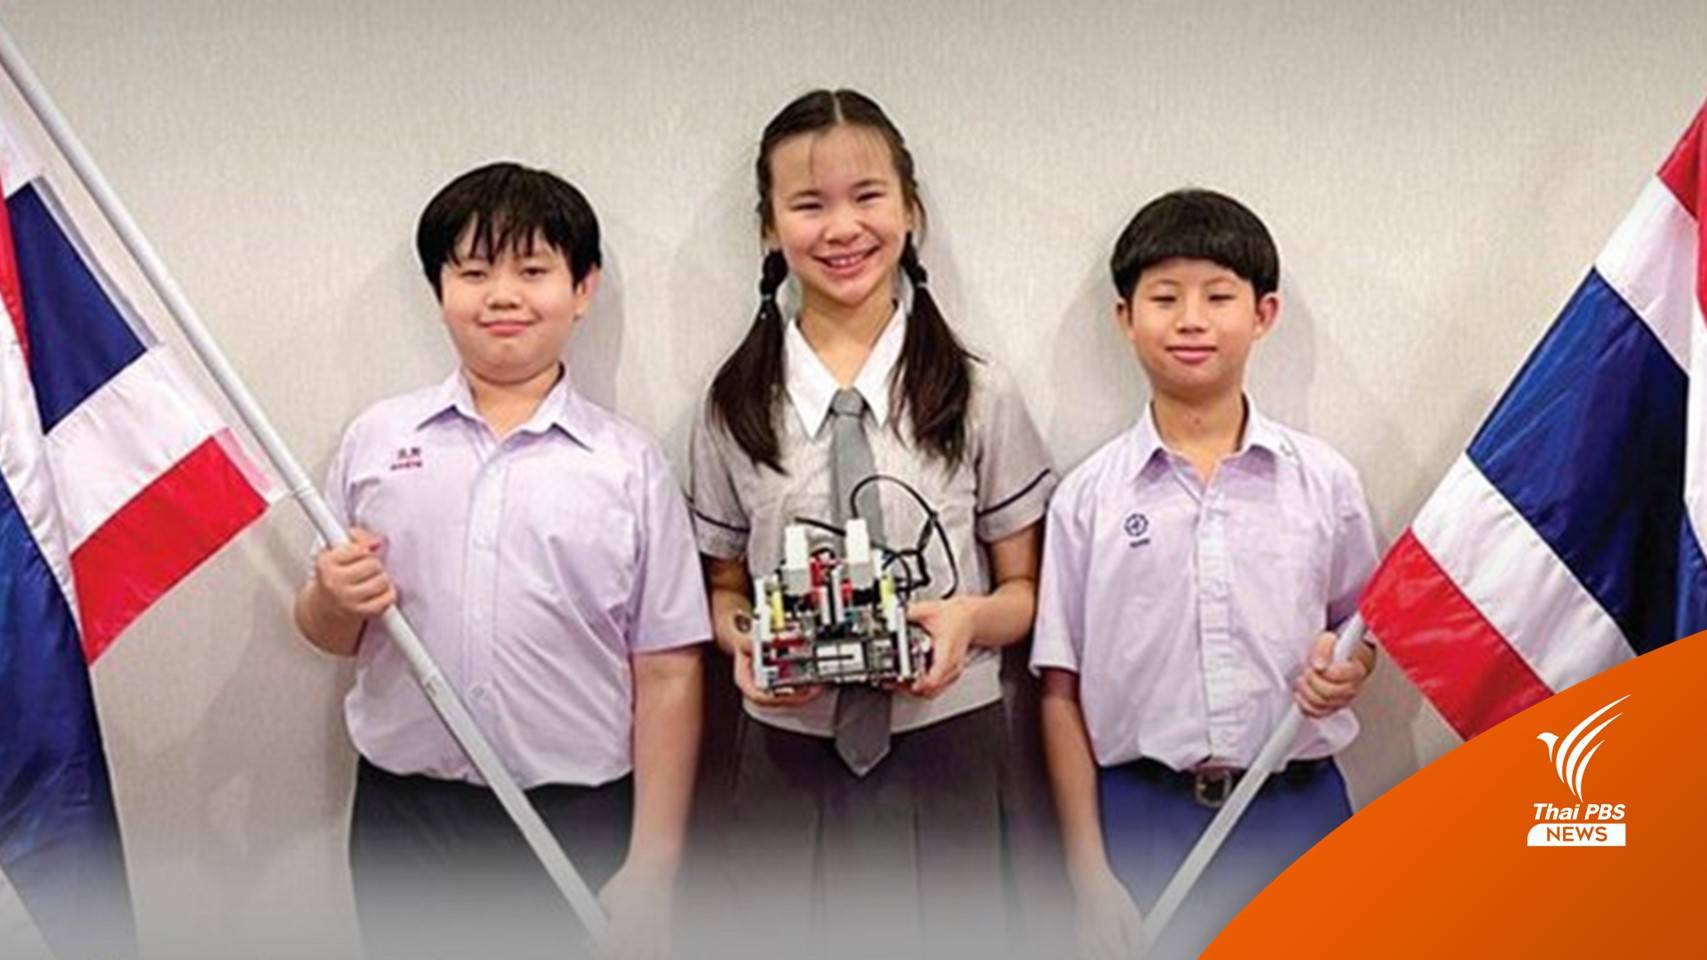 เด็กไทยคว้ารางวัล แข่งขันหุ่นยนต์ระดับโลก 